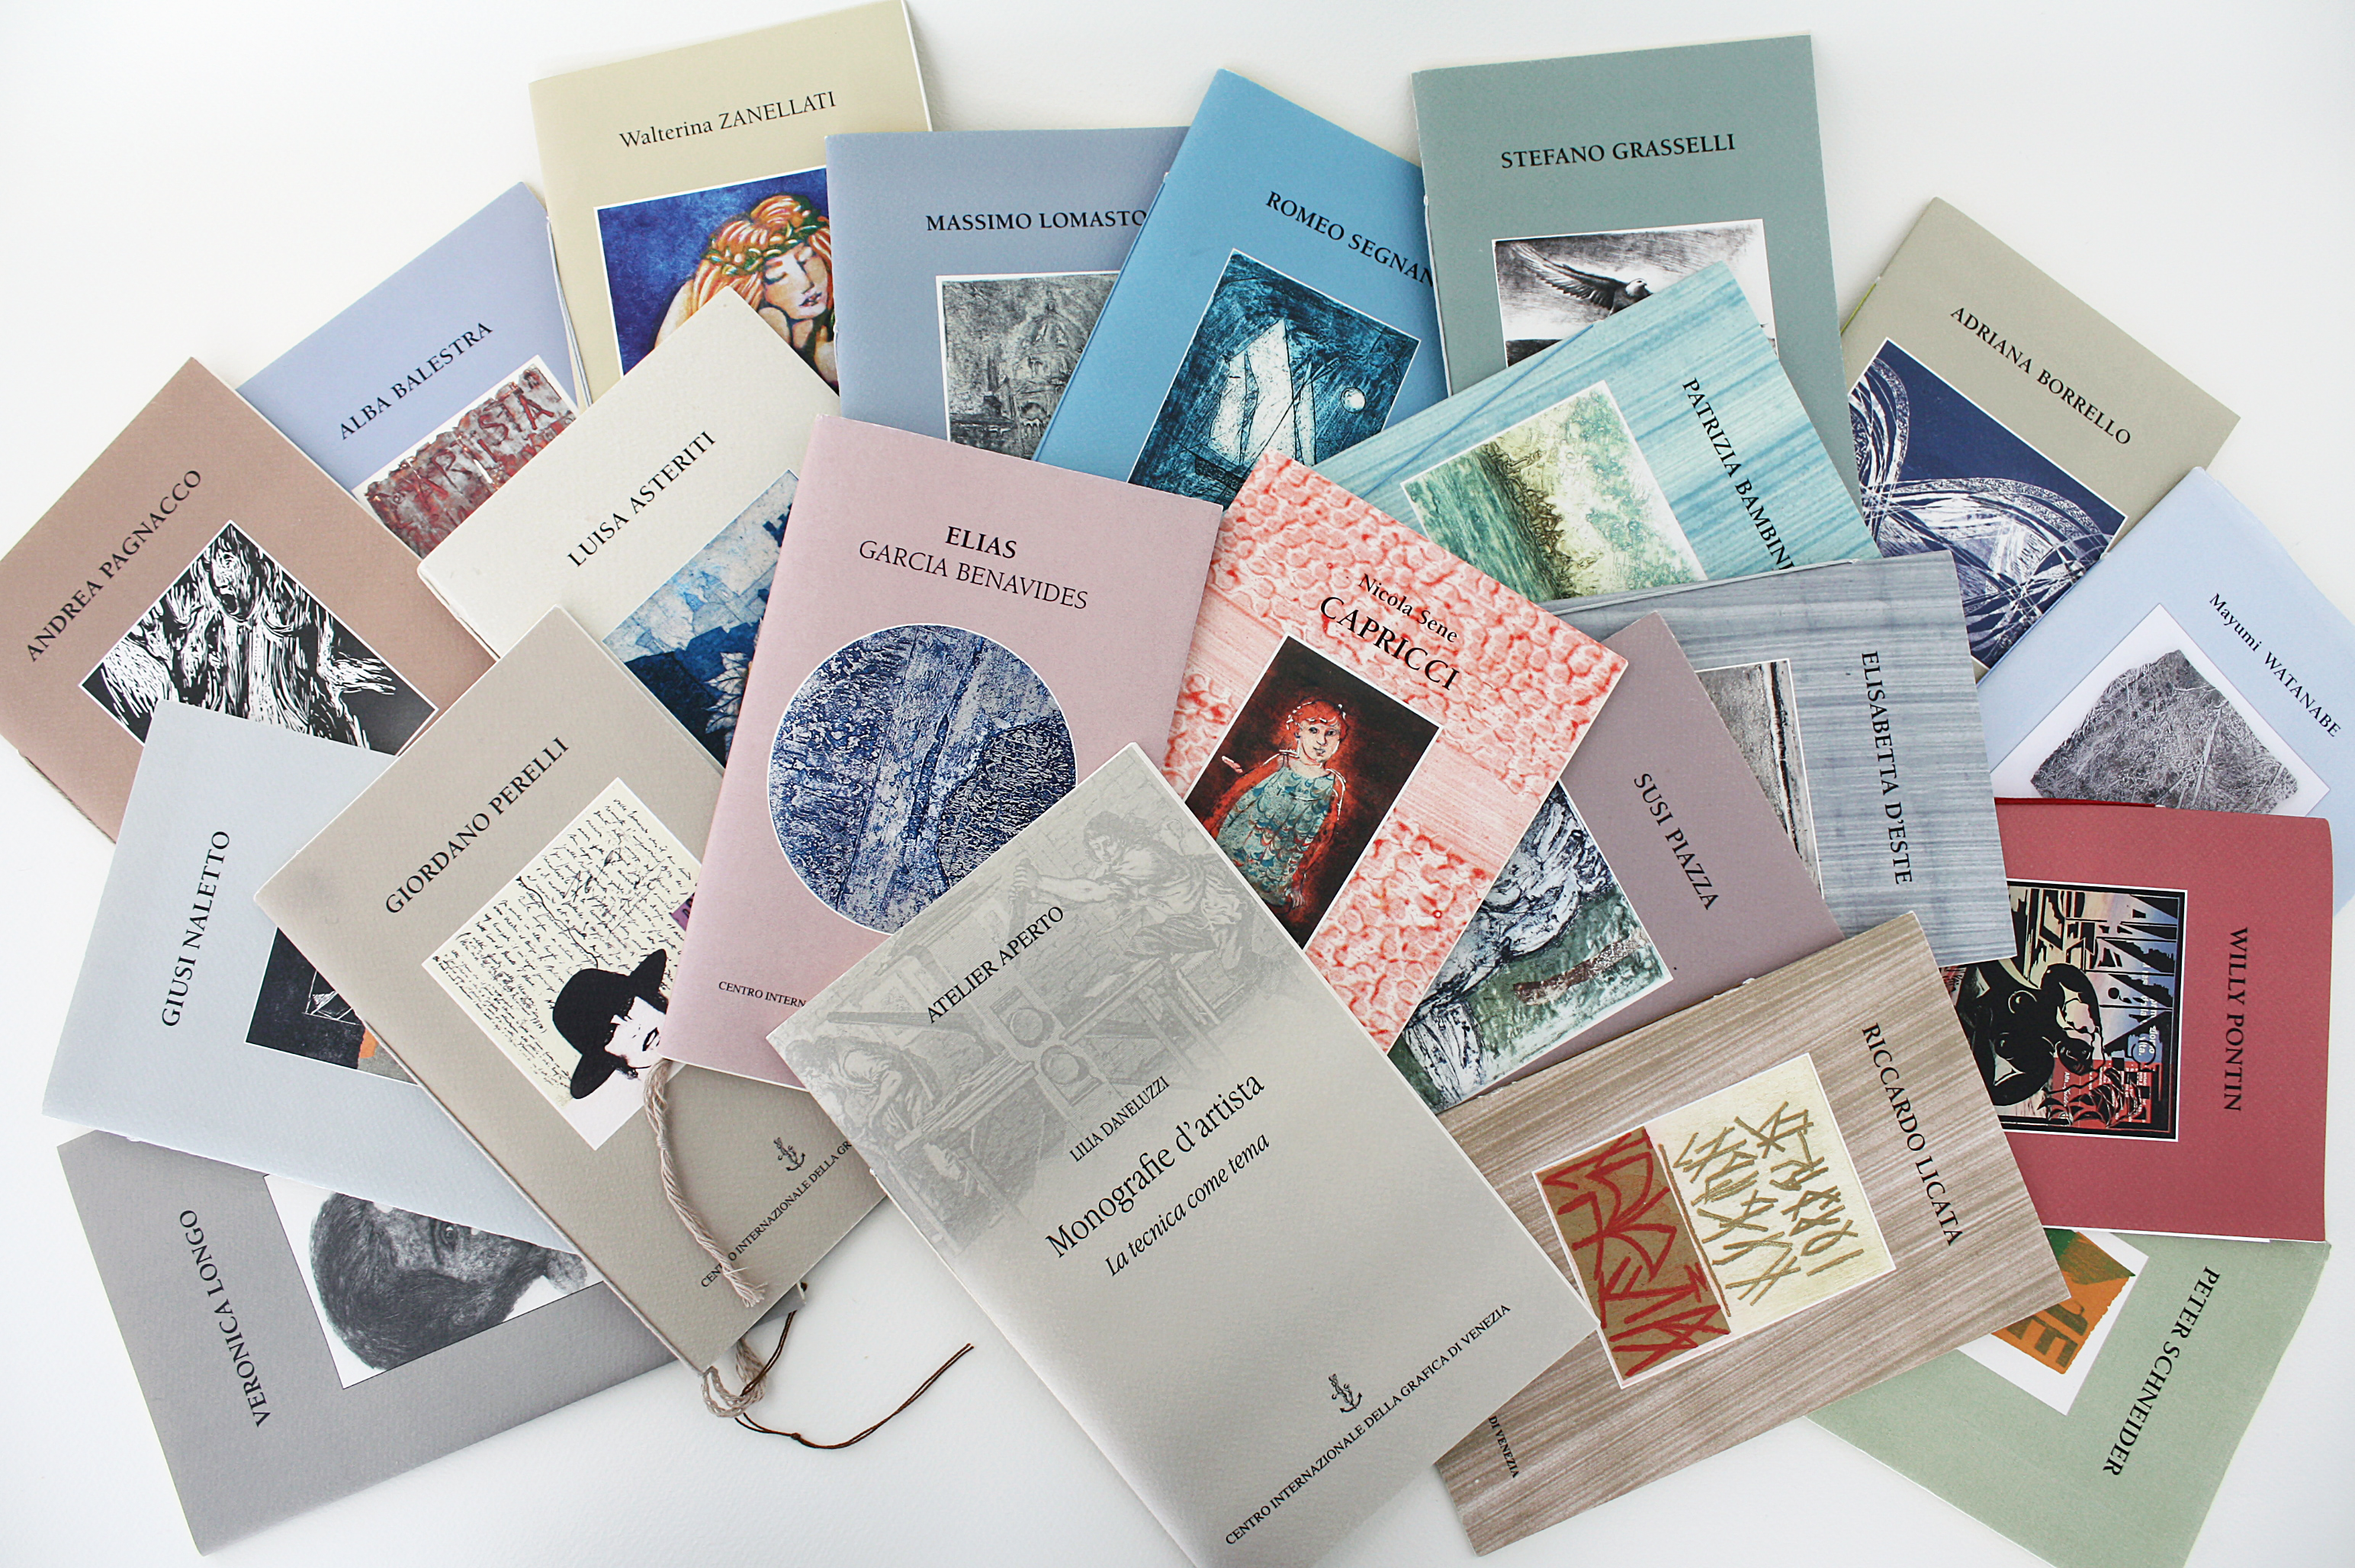 Le 21 Monografie d'artista e il catalogo edita dal Centro della Grafica di Venezia